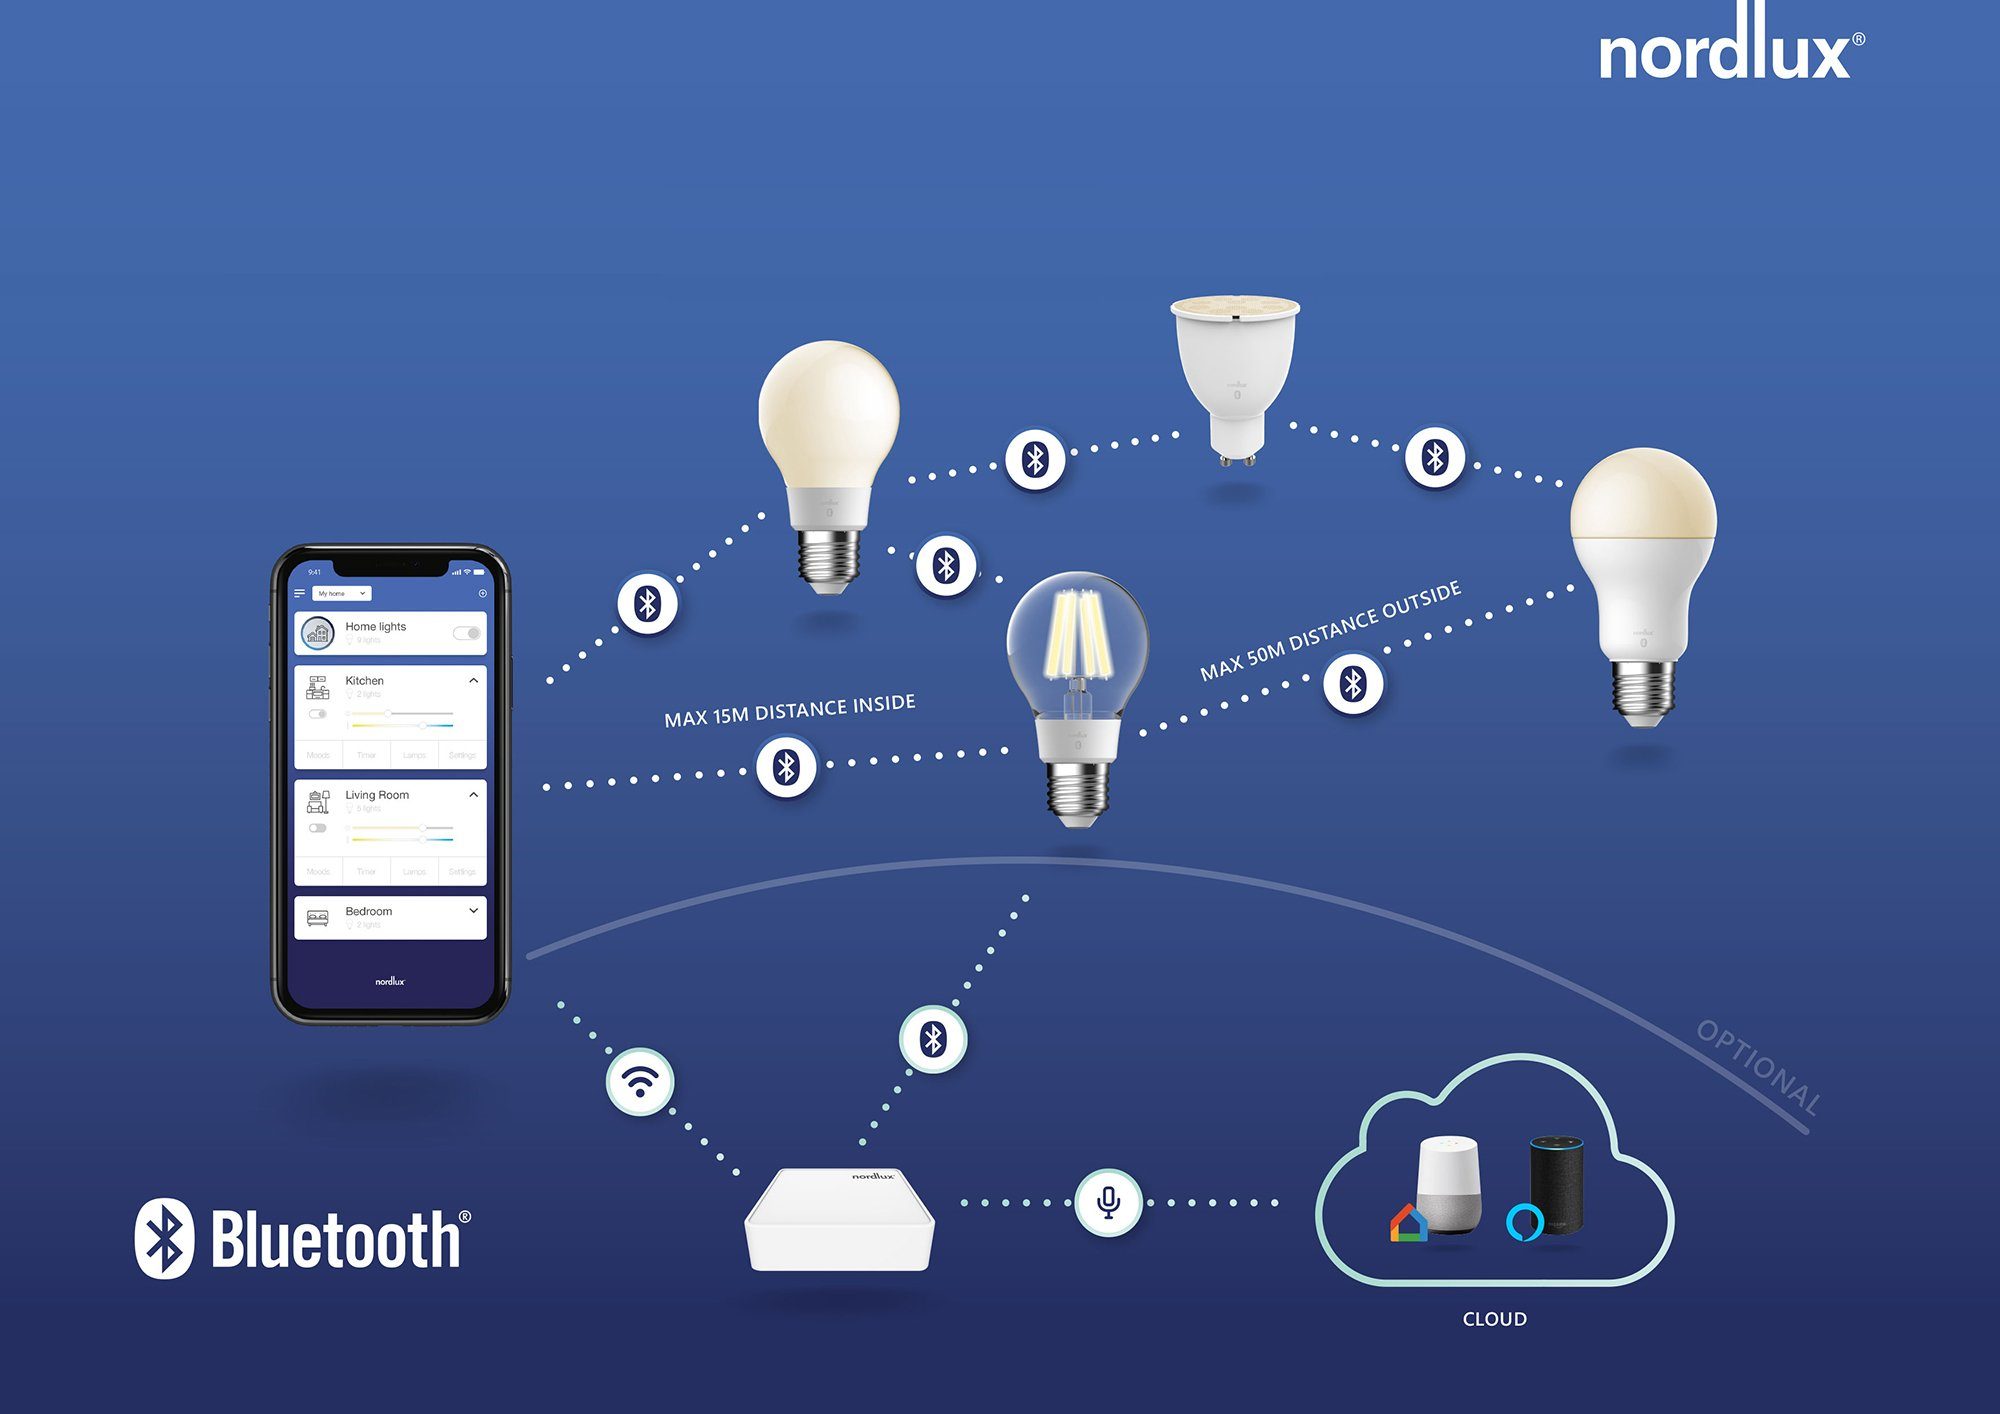 Lichtstärke, mit 1 Home Wifi Steuerbar, Lichtfarbe, oder Smartlight, St., LED-Leuchtmittel Smart Bluetooth GU10, Farbwechsler, Nordlux